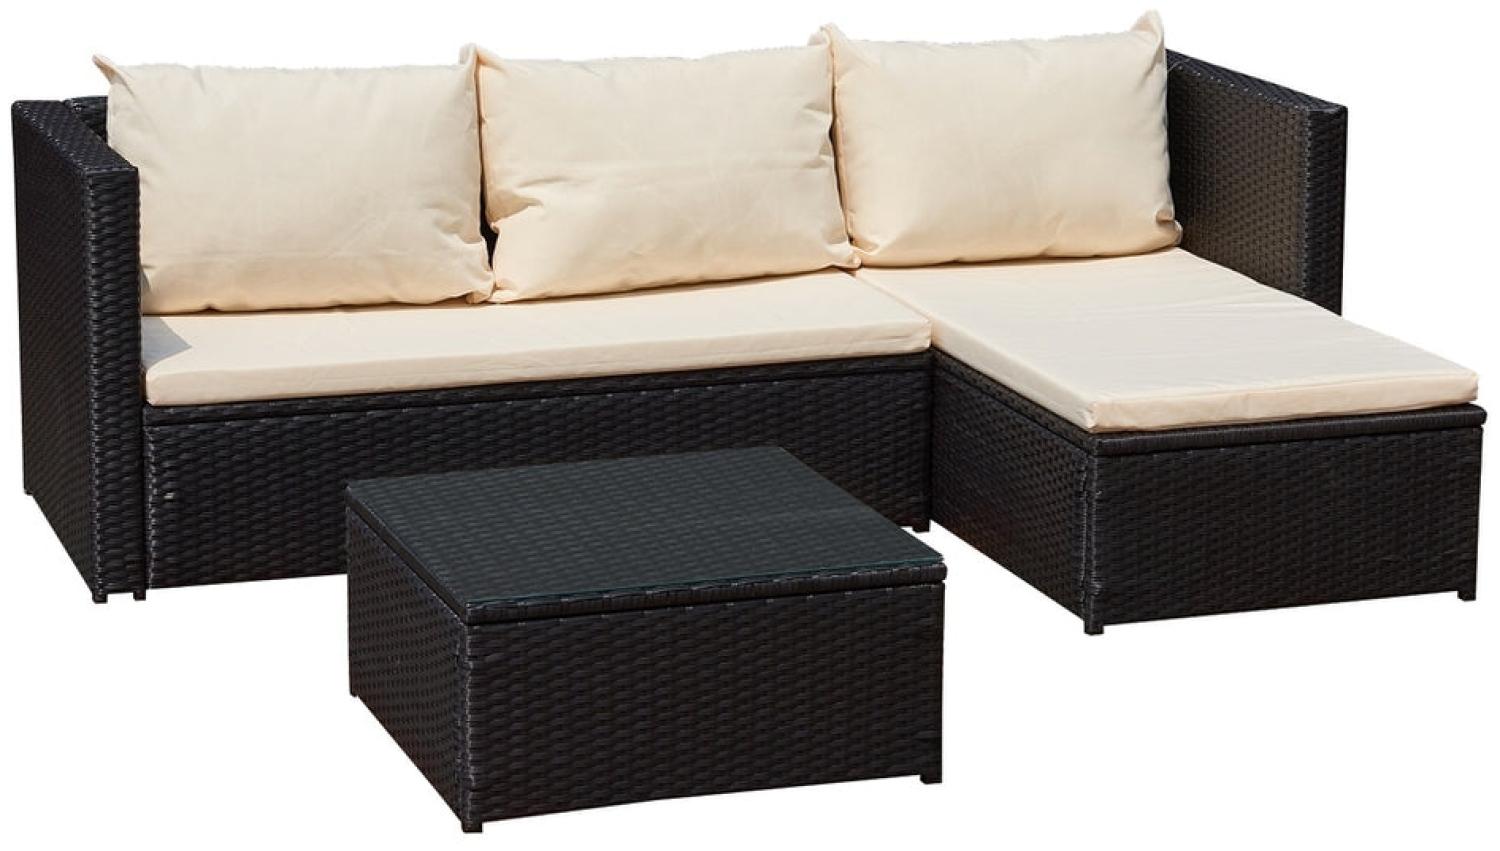 Luxus Premium Polyrattan Garten Lounge SET schwarz beige Esstisch Gartenmöbel Bild 1